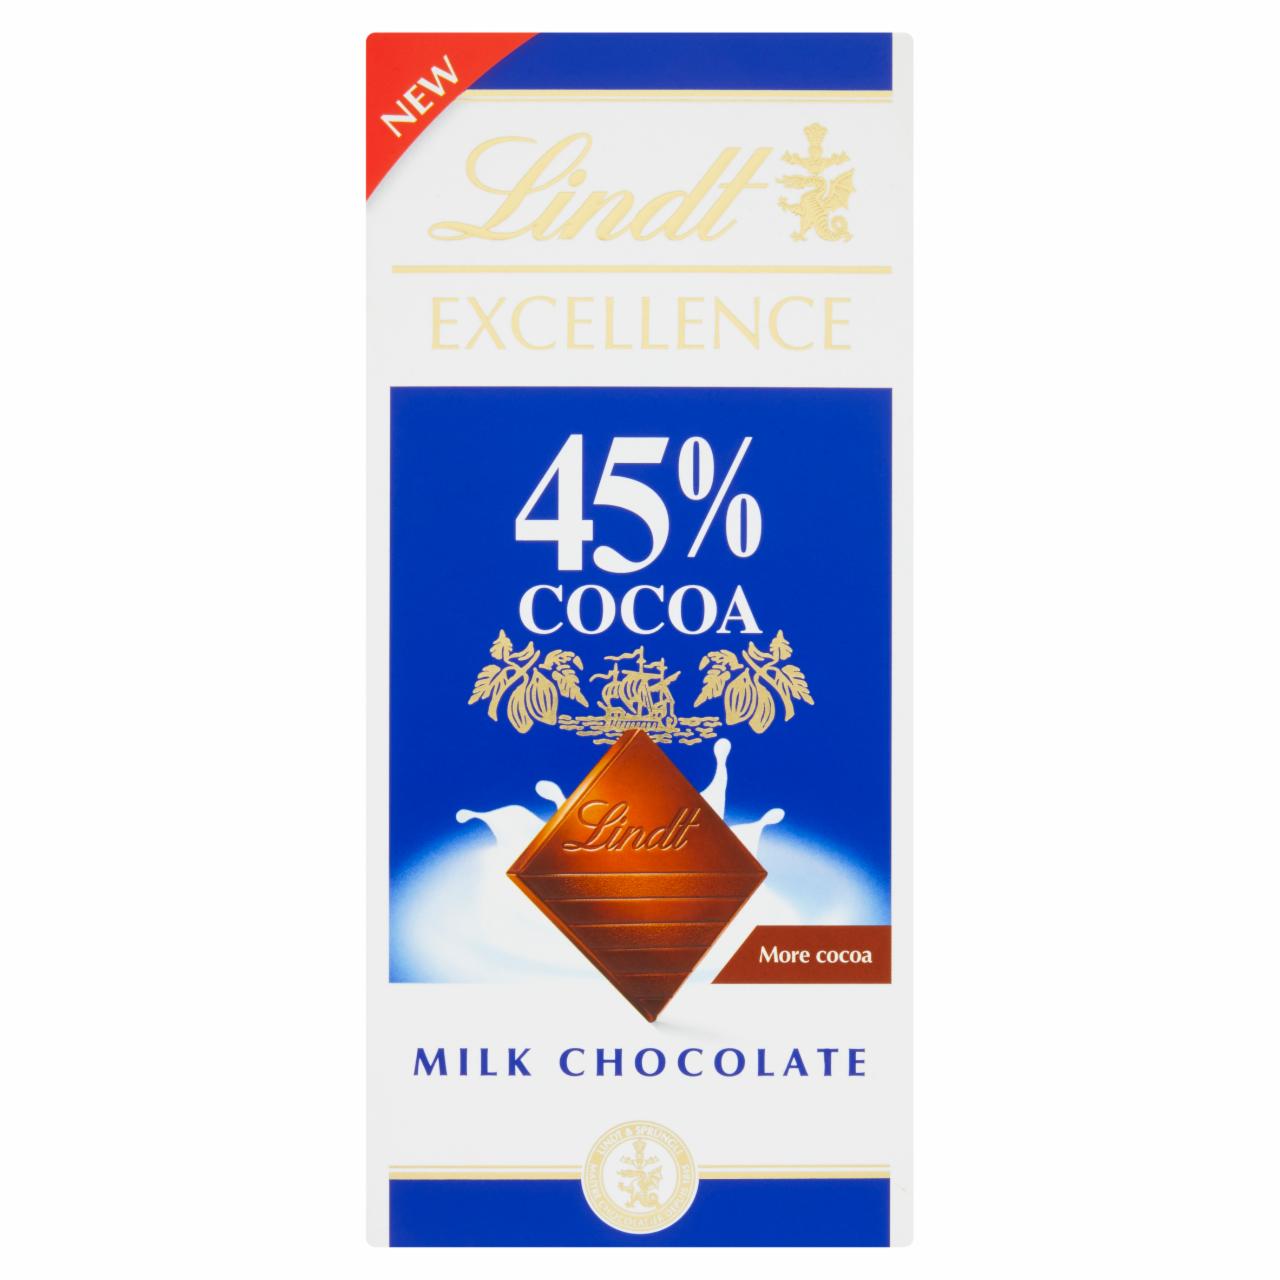 Képek - Lindt Excellence magas kakaótartalmú tejcsokoládé 45% 80 g